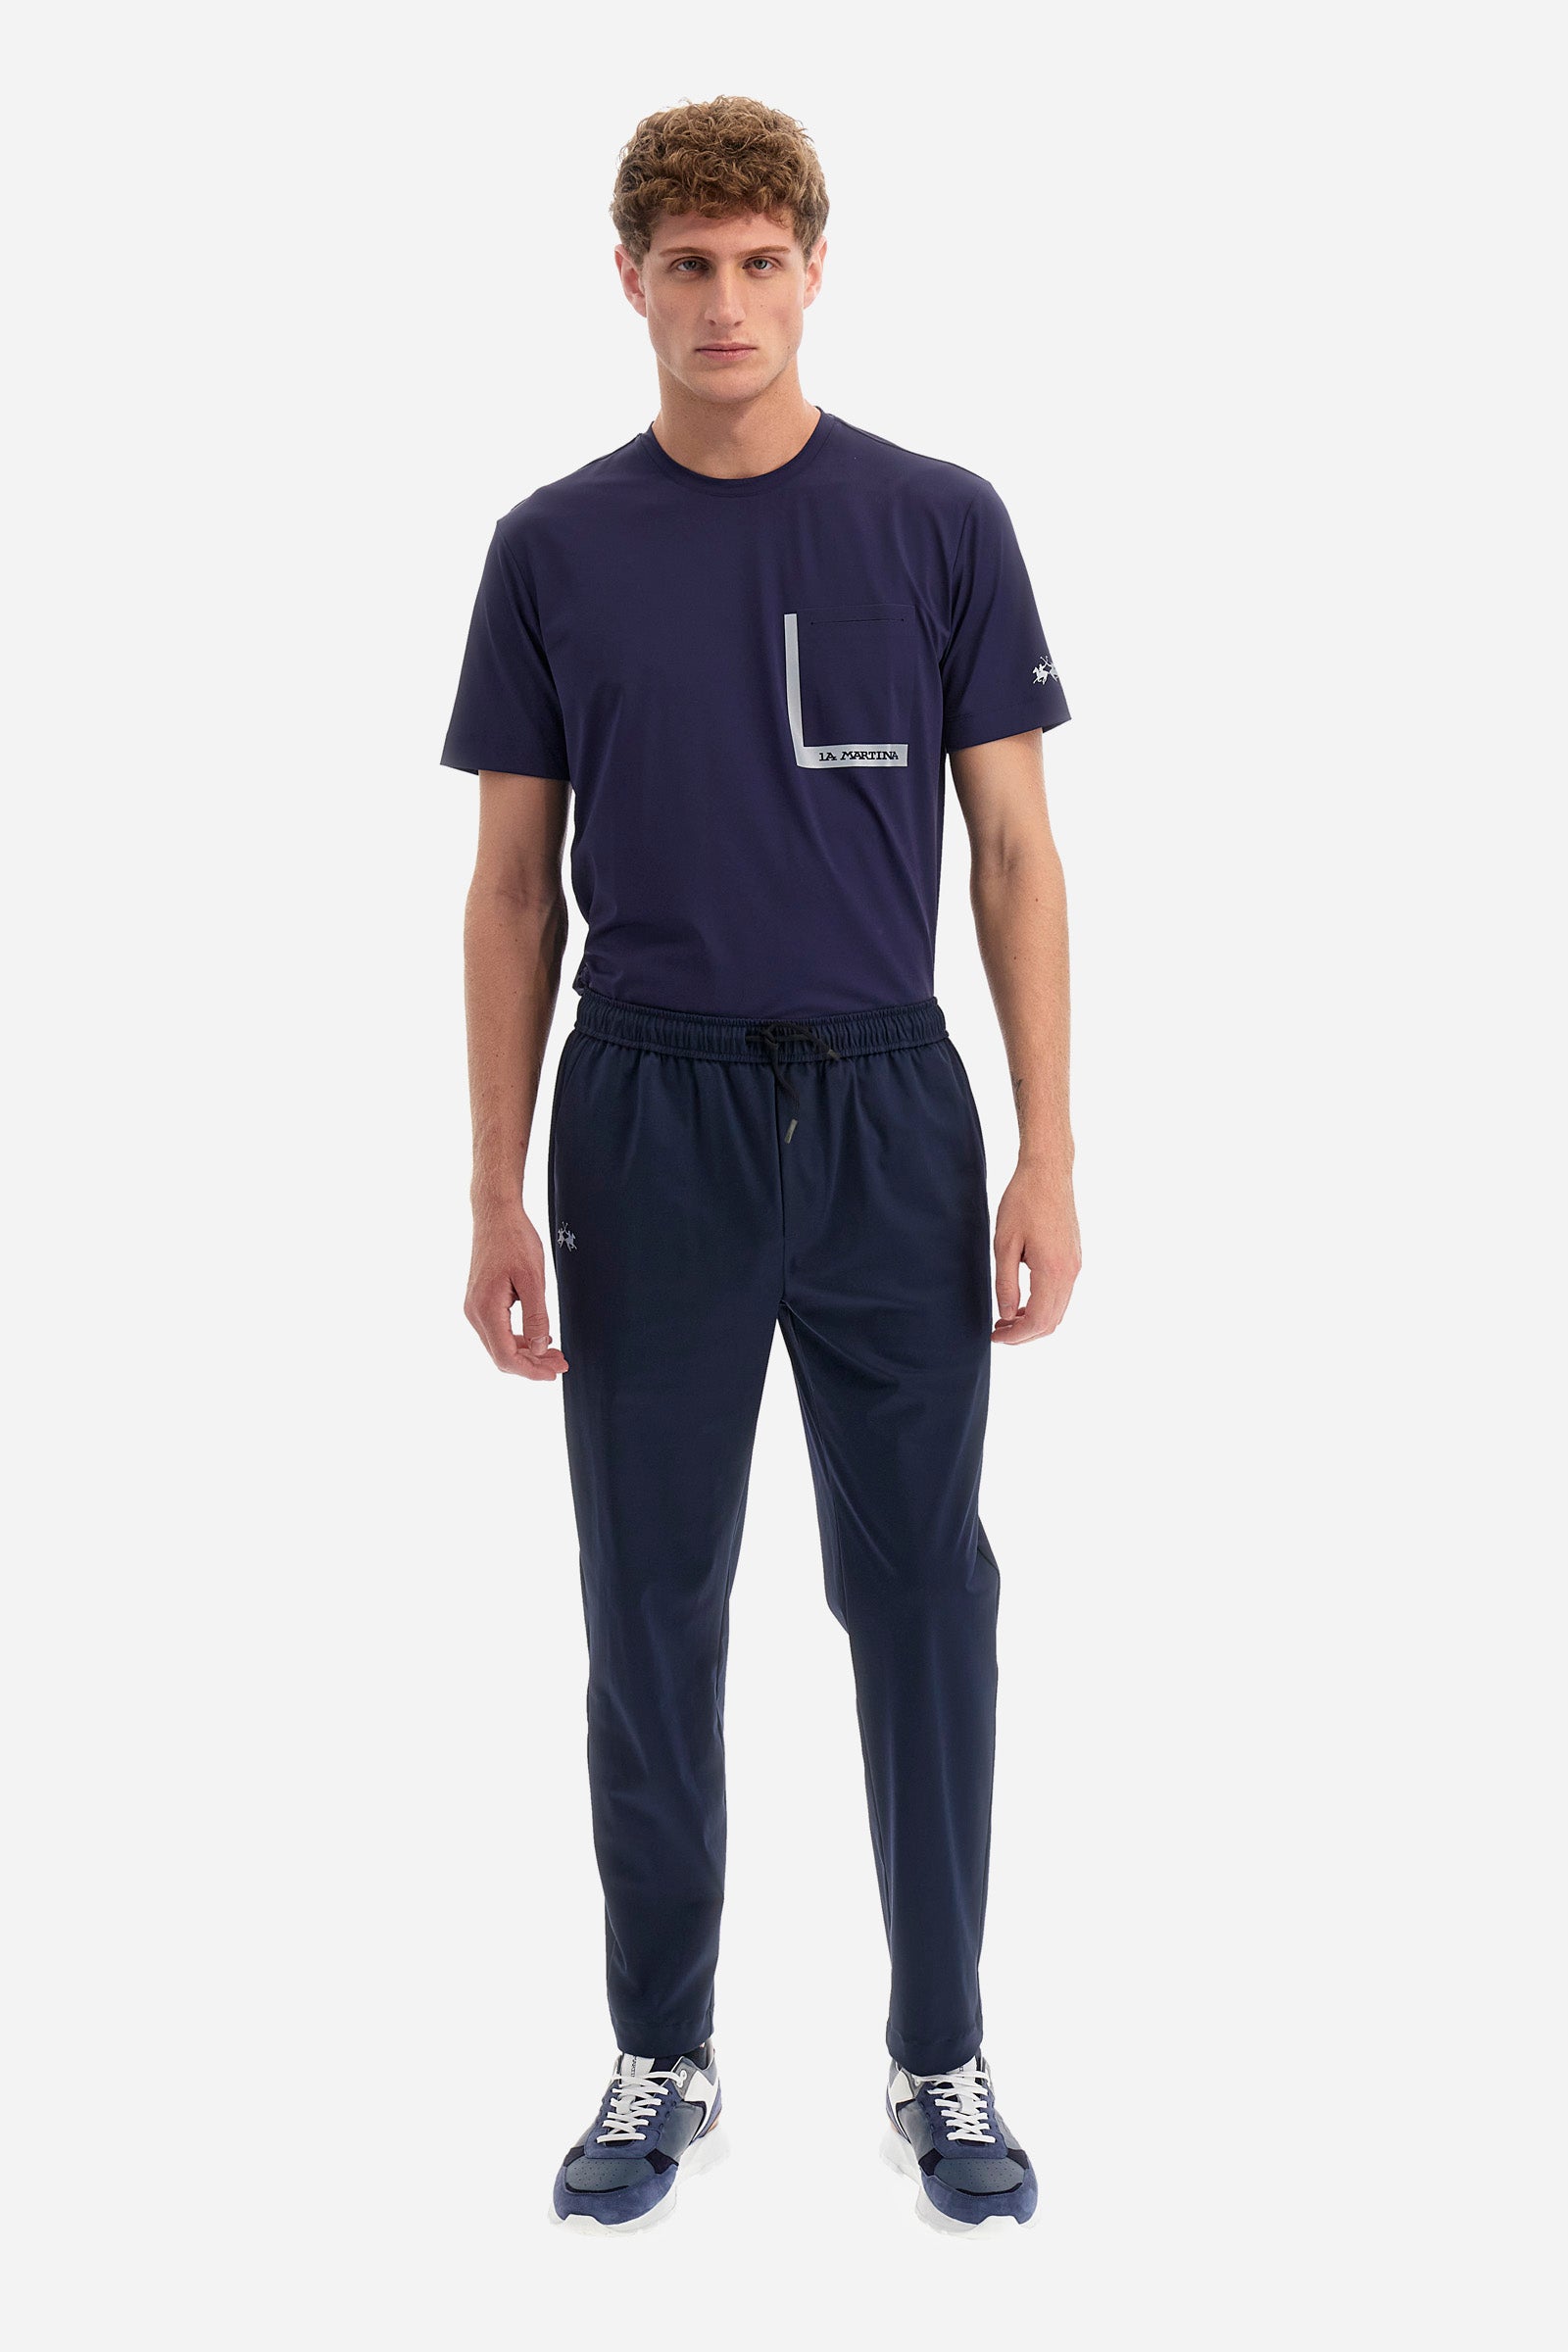 Pantalon de jogging coupe classique en tissu synthétique - Yovanney